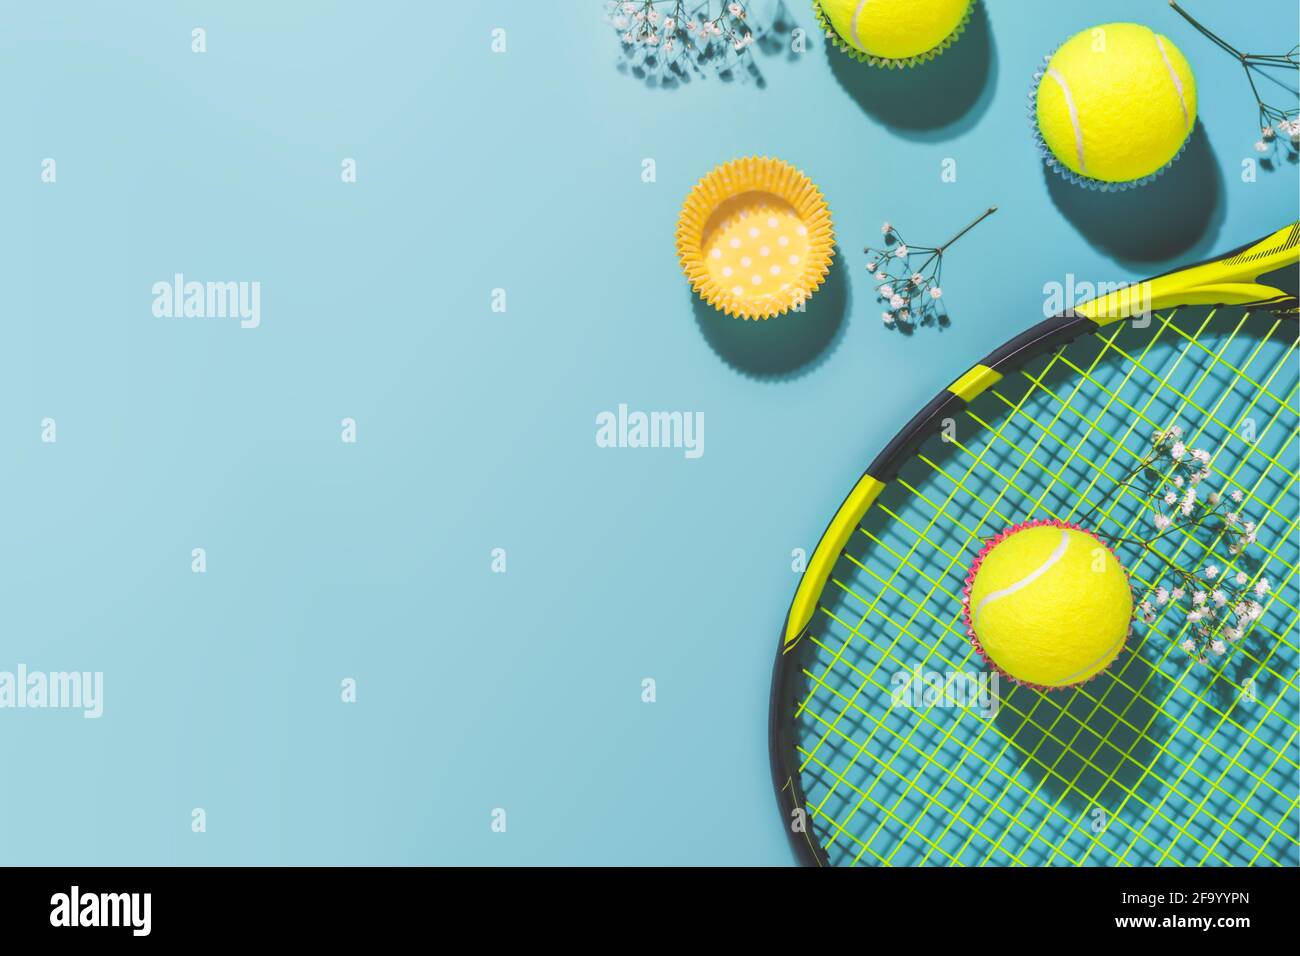 Festa di tennis. Composizione sportiva Holliday con palla da tennis gialla e racchetta su sfondo blu di campo da tennis duro Foto Stock